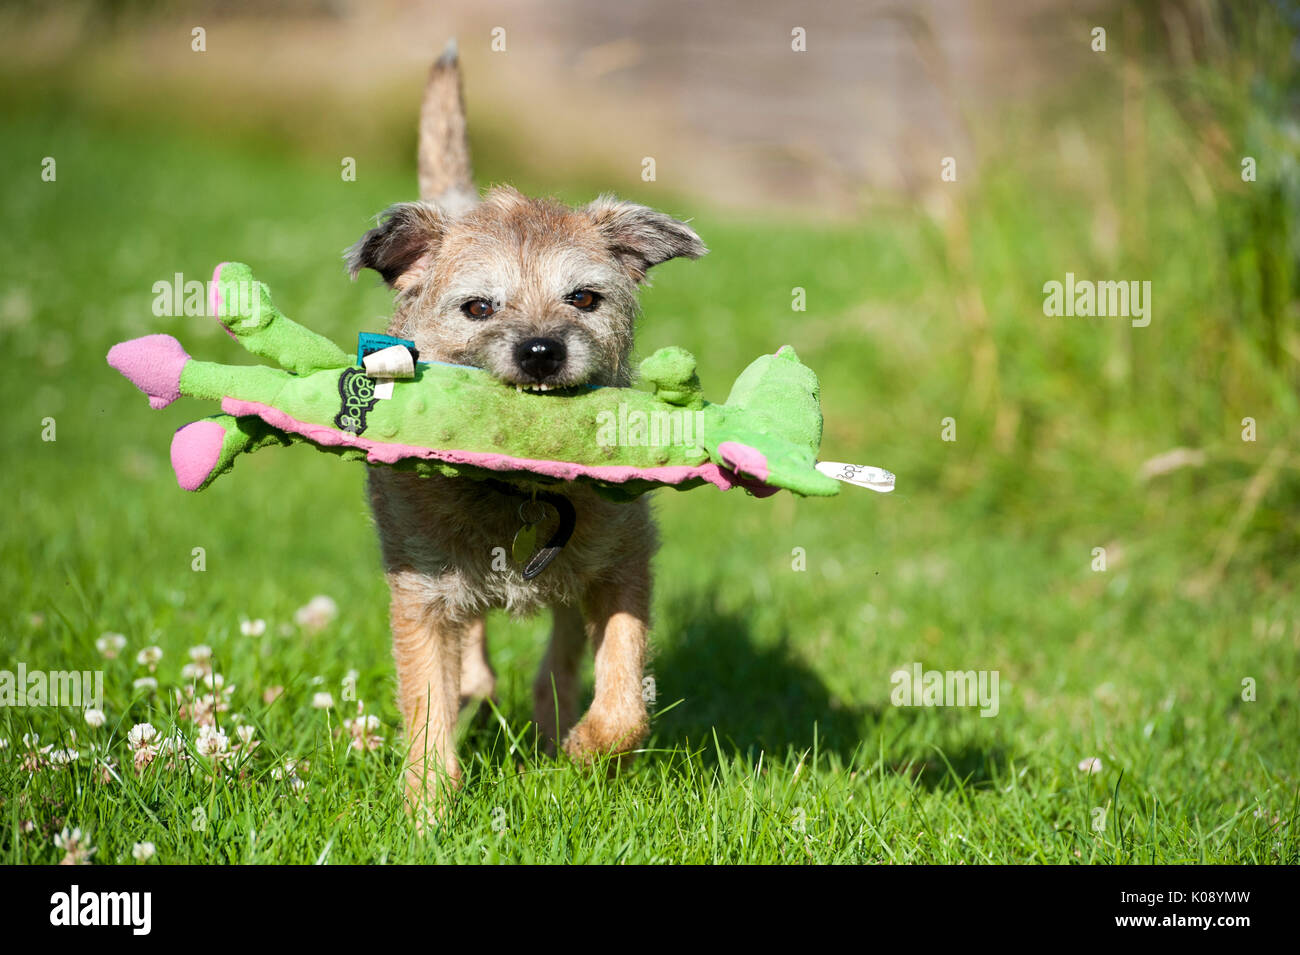 Braun scruffy Border Terrier Hund beim Spielen im Garten mit einem grossen  weichen quietschendes Spielzeug. Die Sonne scheint und der Hund ist sehr  glücklich, manchmal mit dem Spielzeug Drachen in seinem Mund